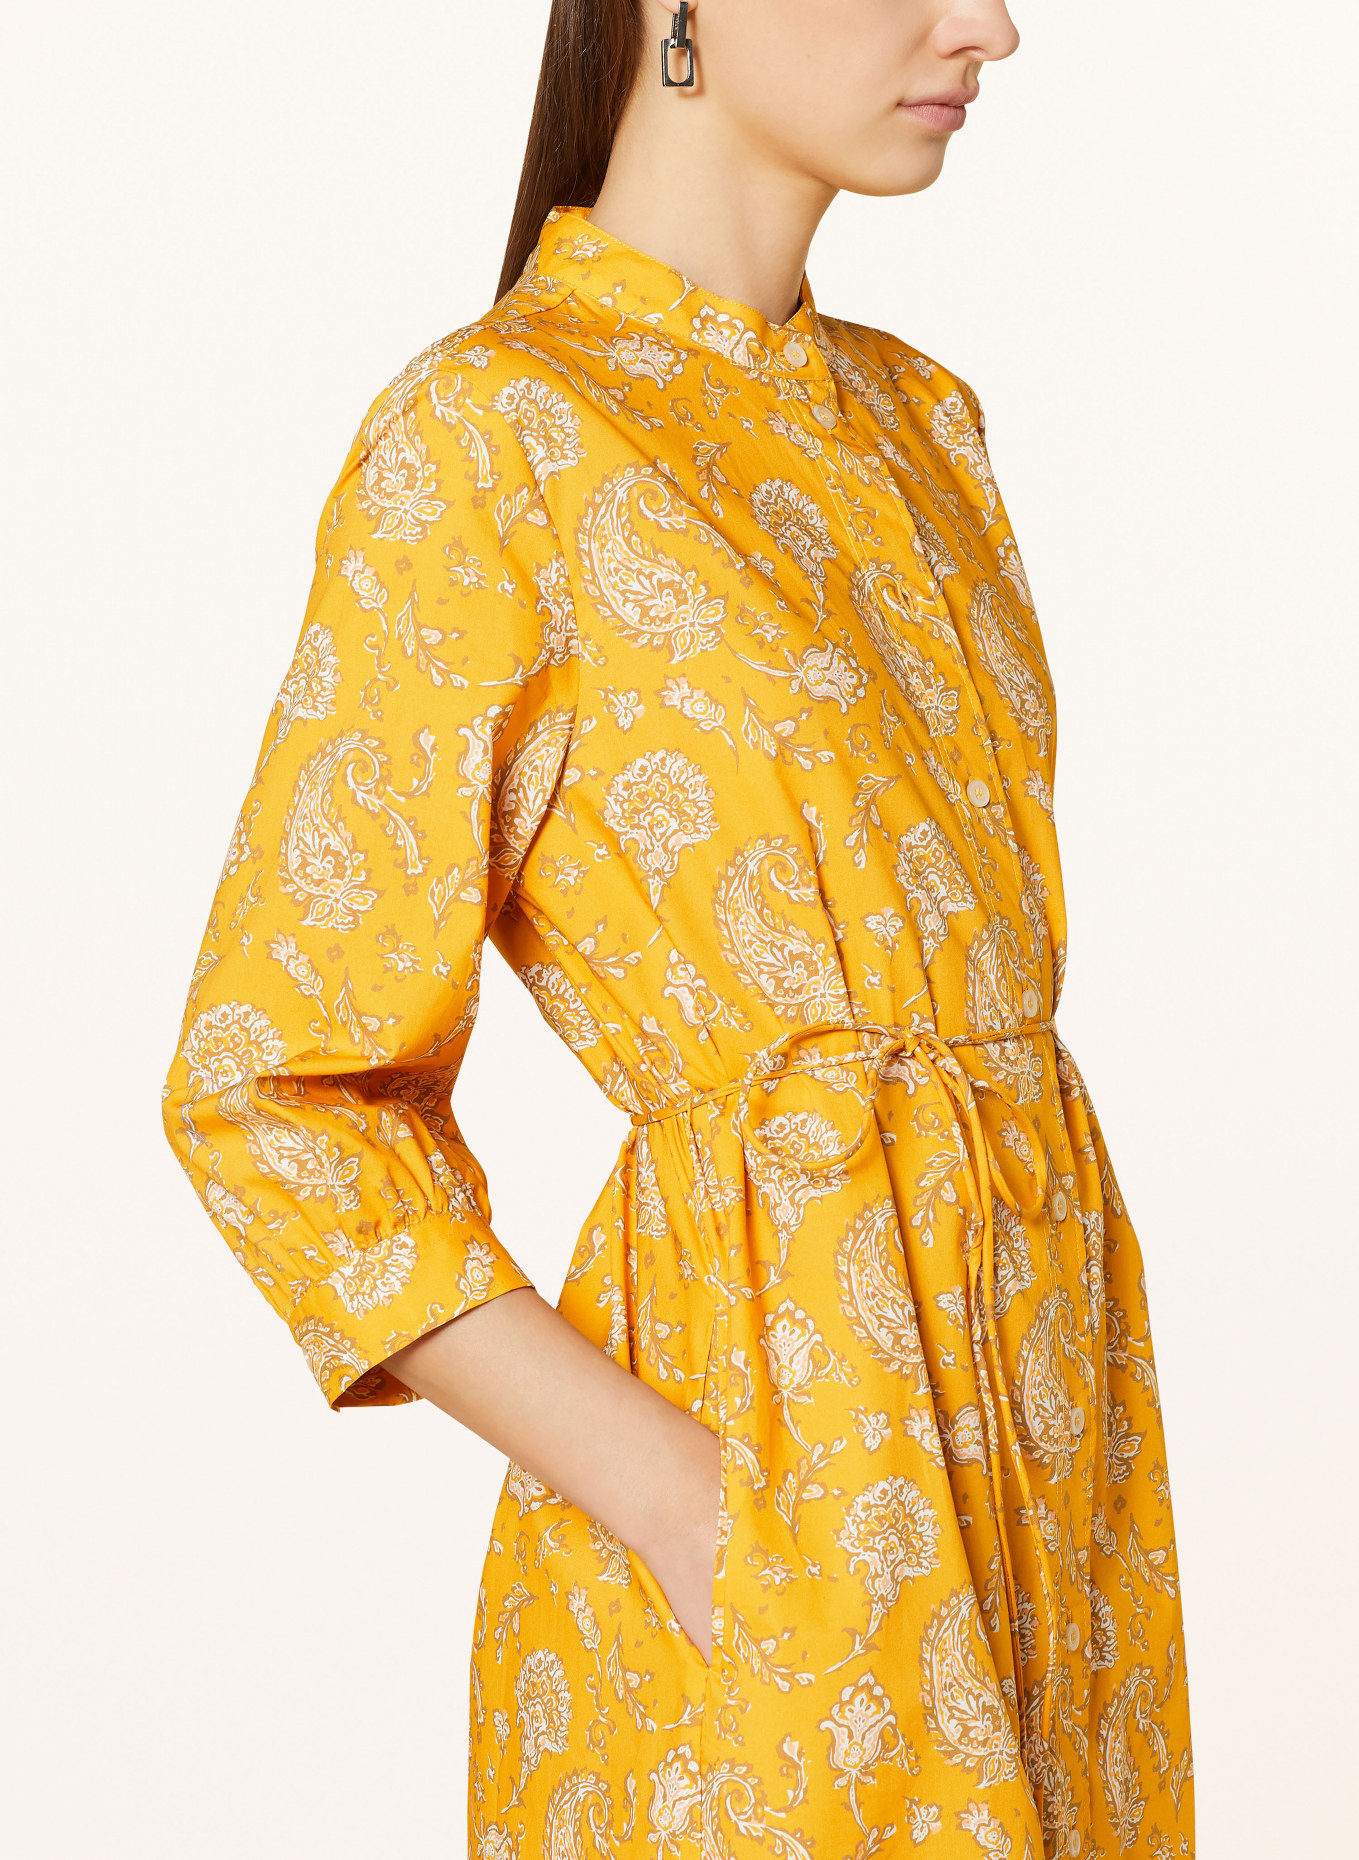 MAERZ MUENCHEN Hemdblusenkleid mit 3/4-Arm, Farbe: GELB/ WEISS/ BRAUN (Bild 4)